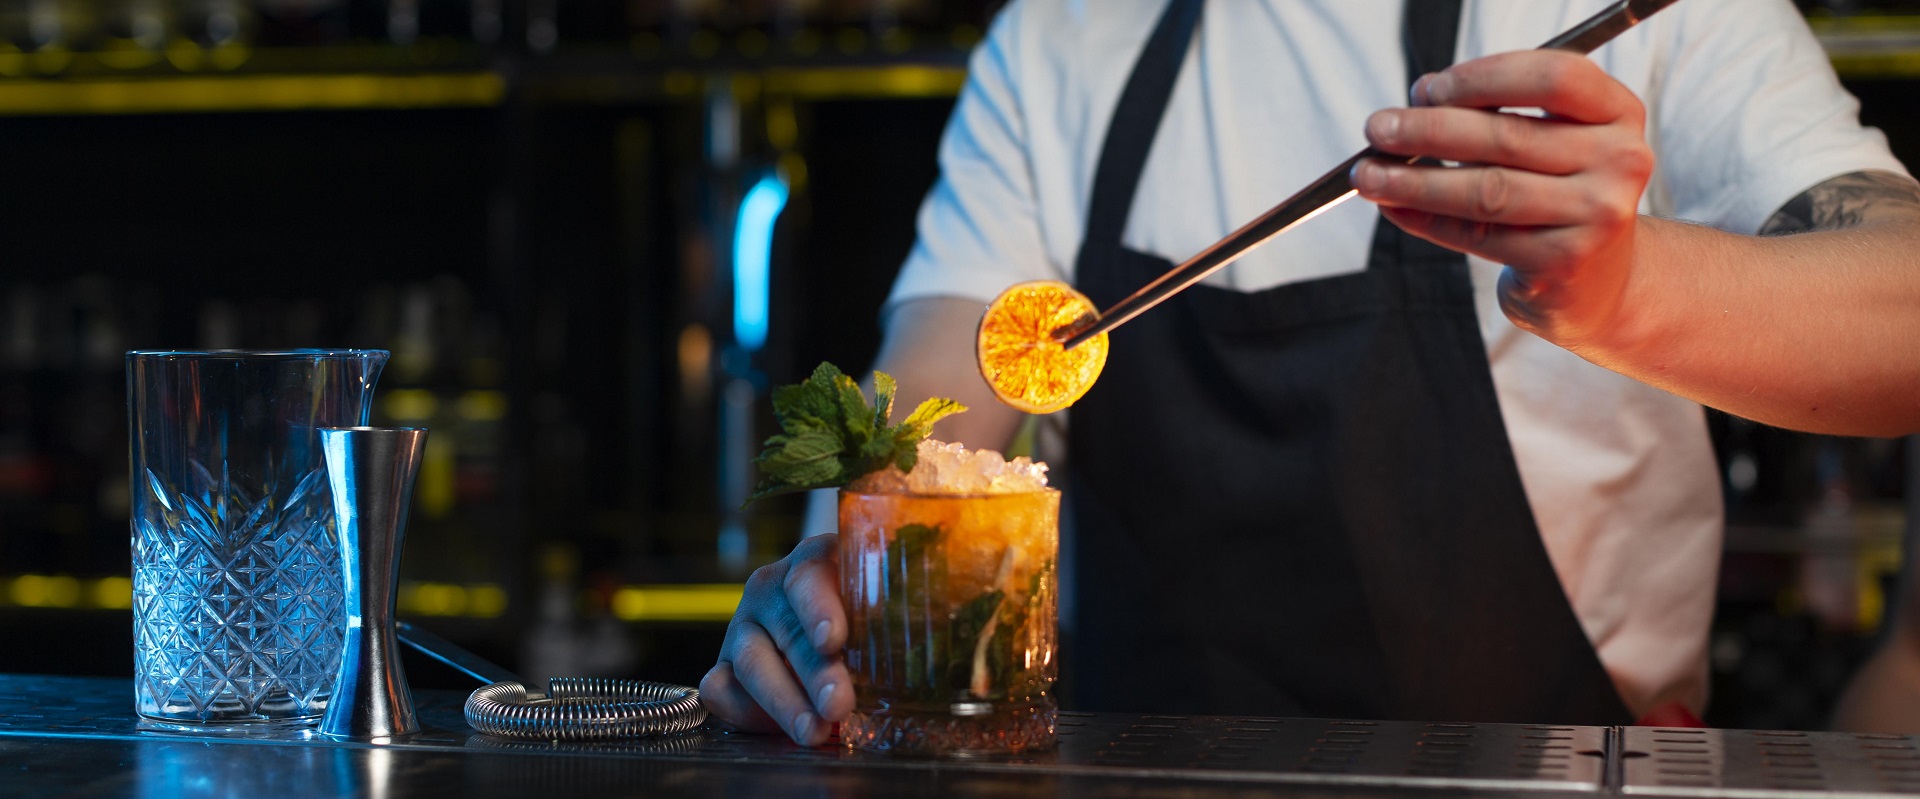 An den Berufsschulen für das Gastgewerbe Savoy und Ritz in Meran kann künftig die Berufliche Qualifikation als Barkeeper und Barkeeperin erworben werden.